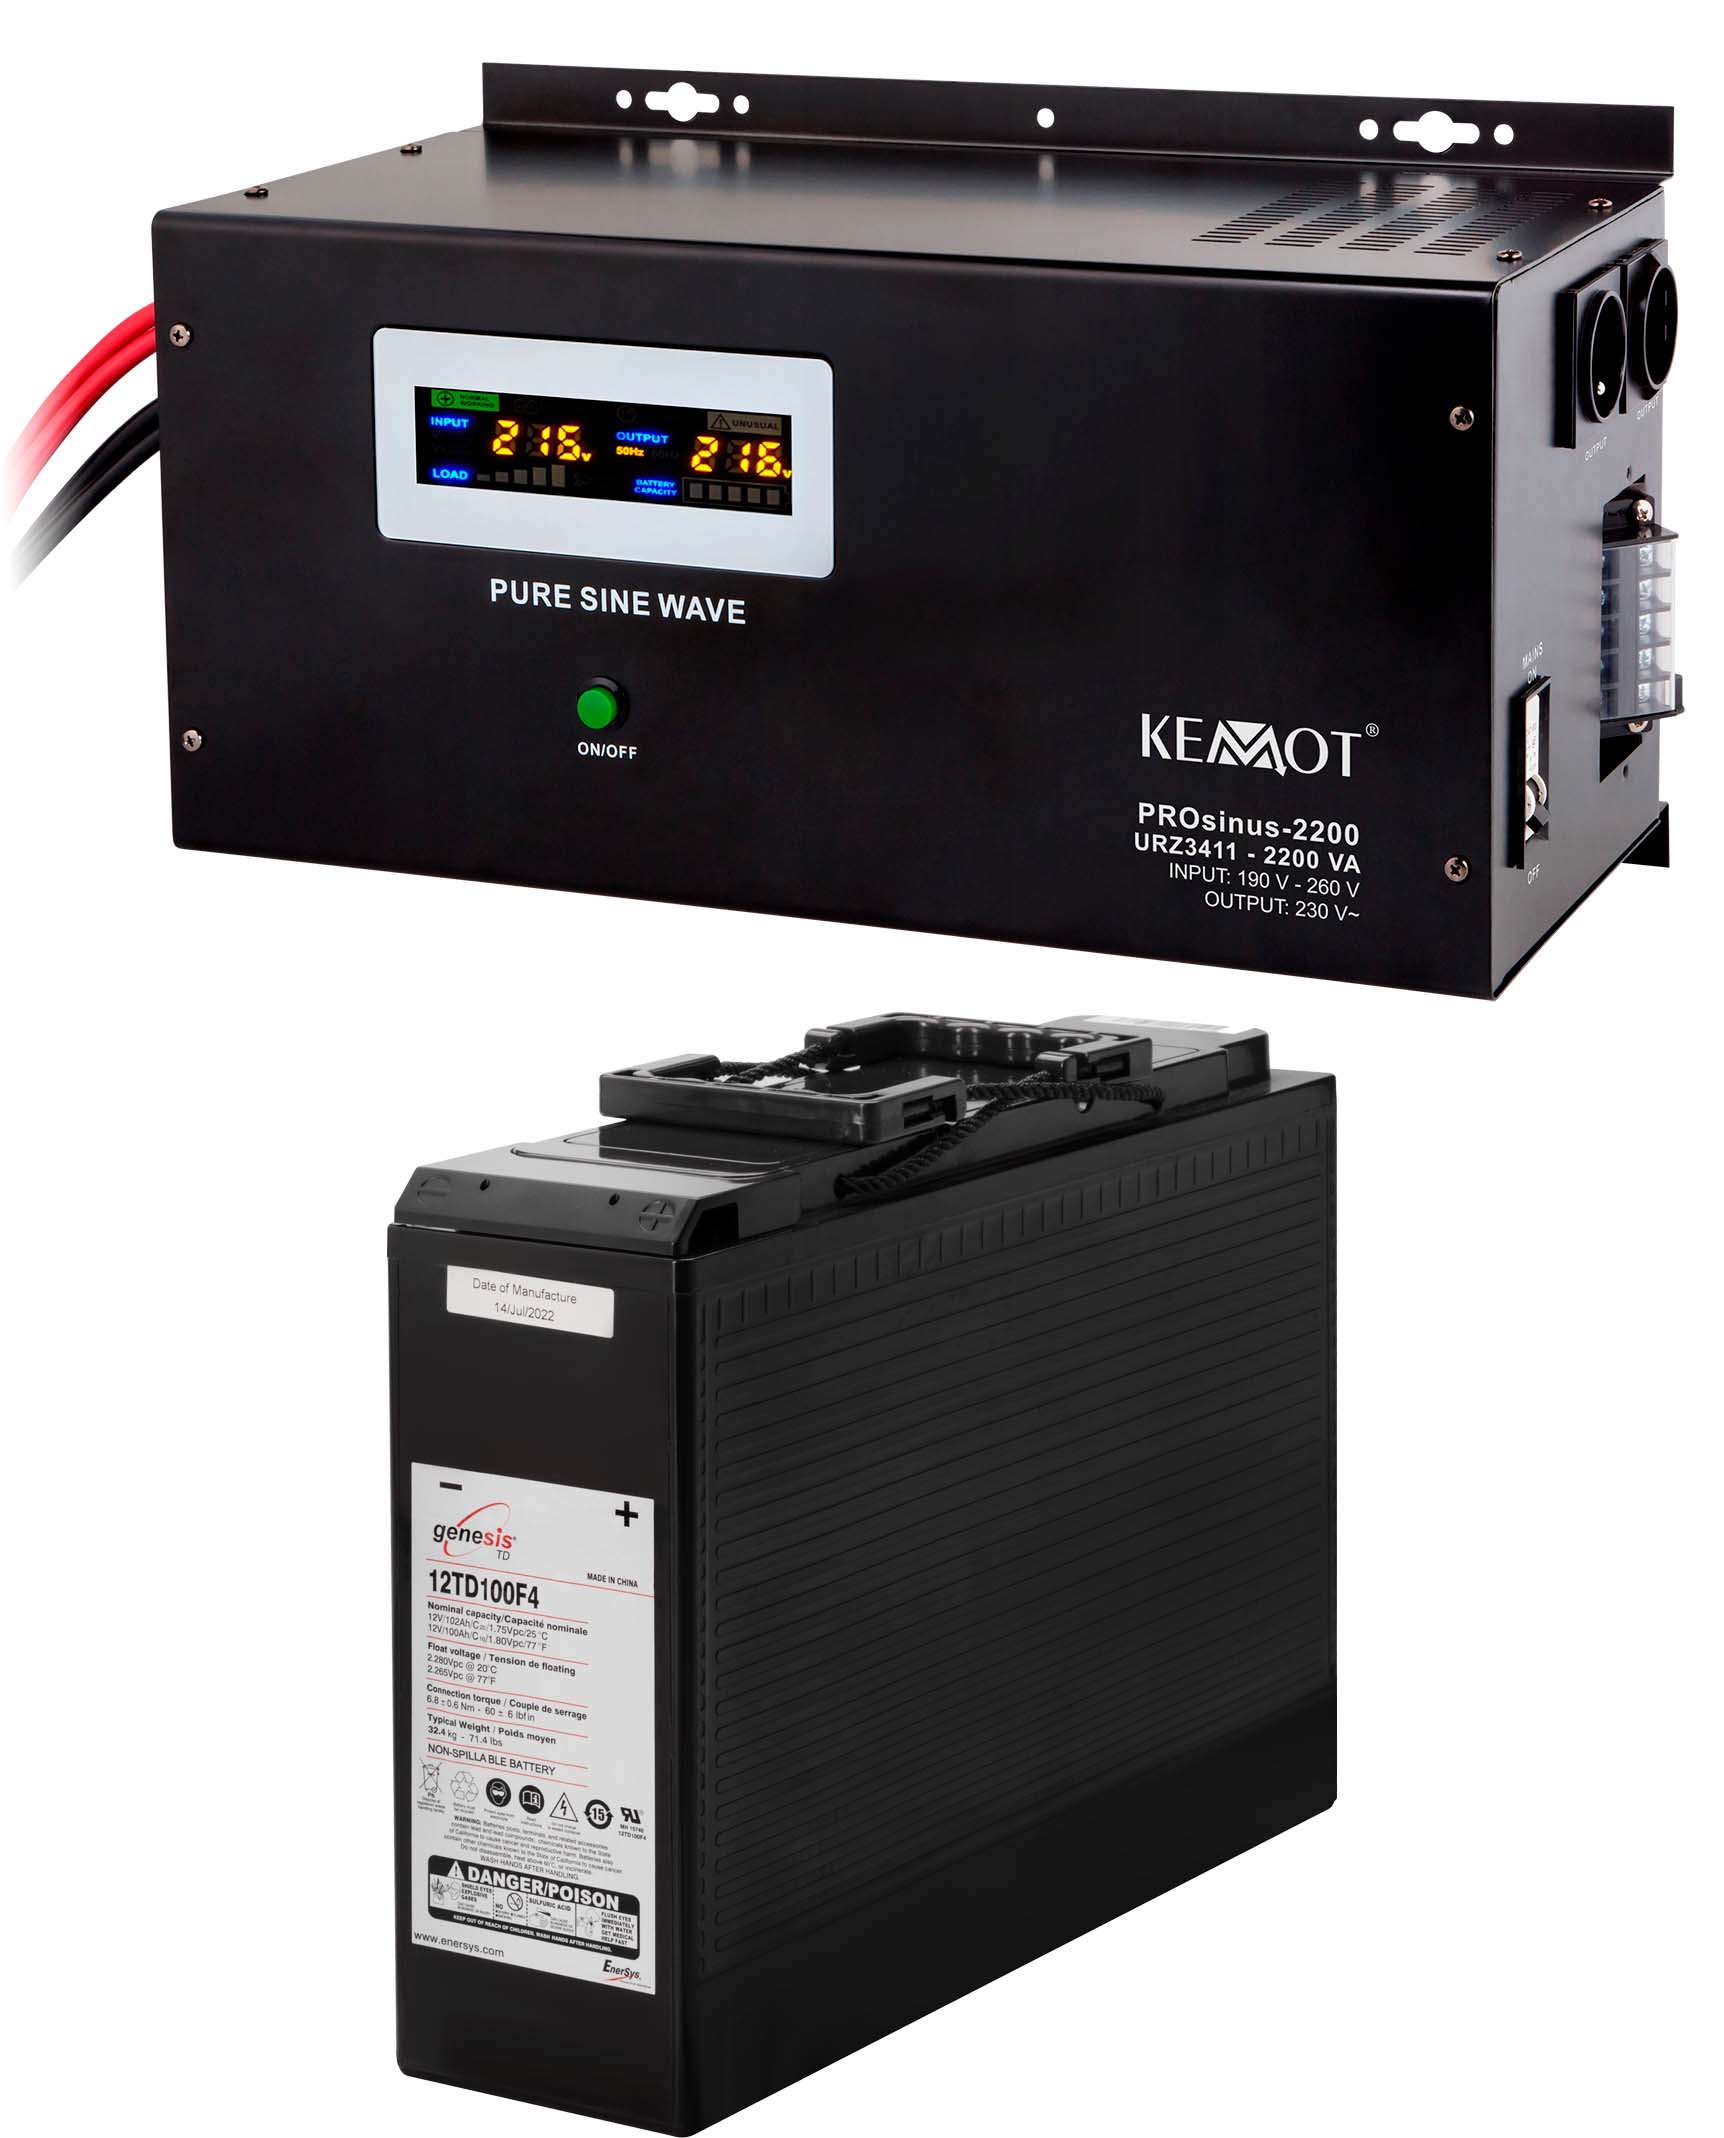 Отзывы источник бесперебойного питания Kemot PROSinus-2200 (URZ3411)+аккумулятор Genesis 12TD100F4 (12V100Ah)